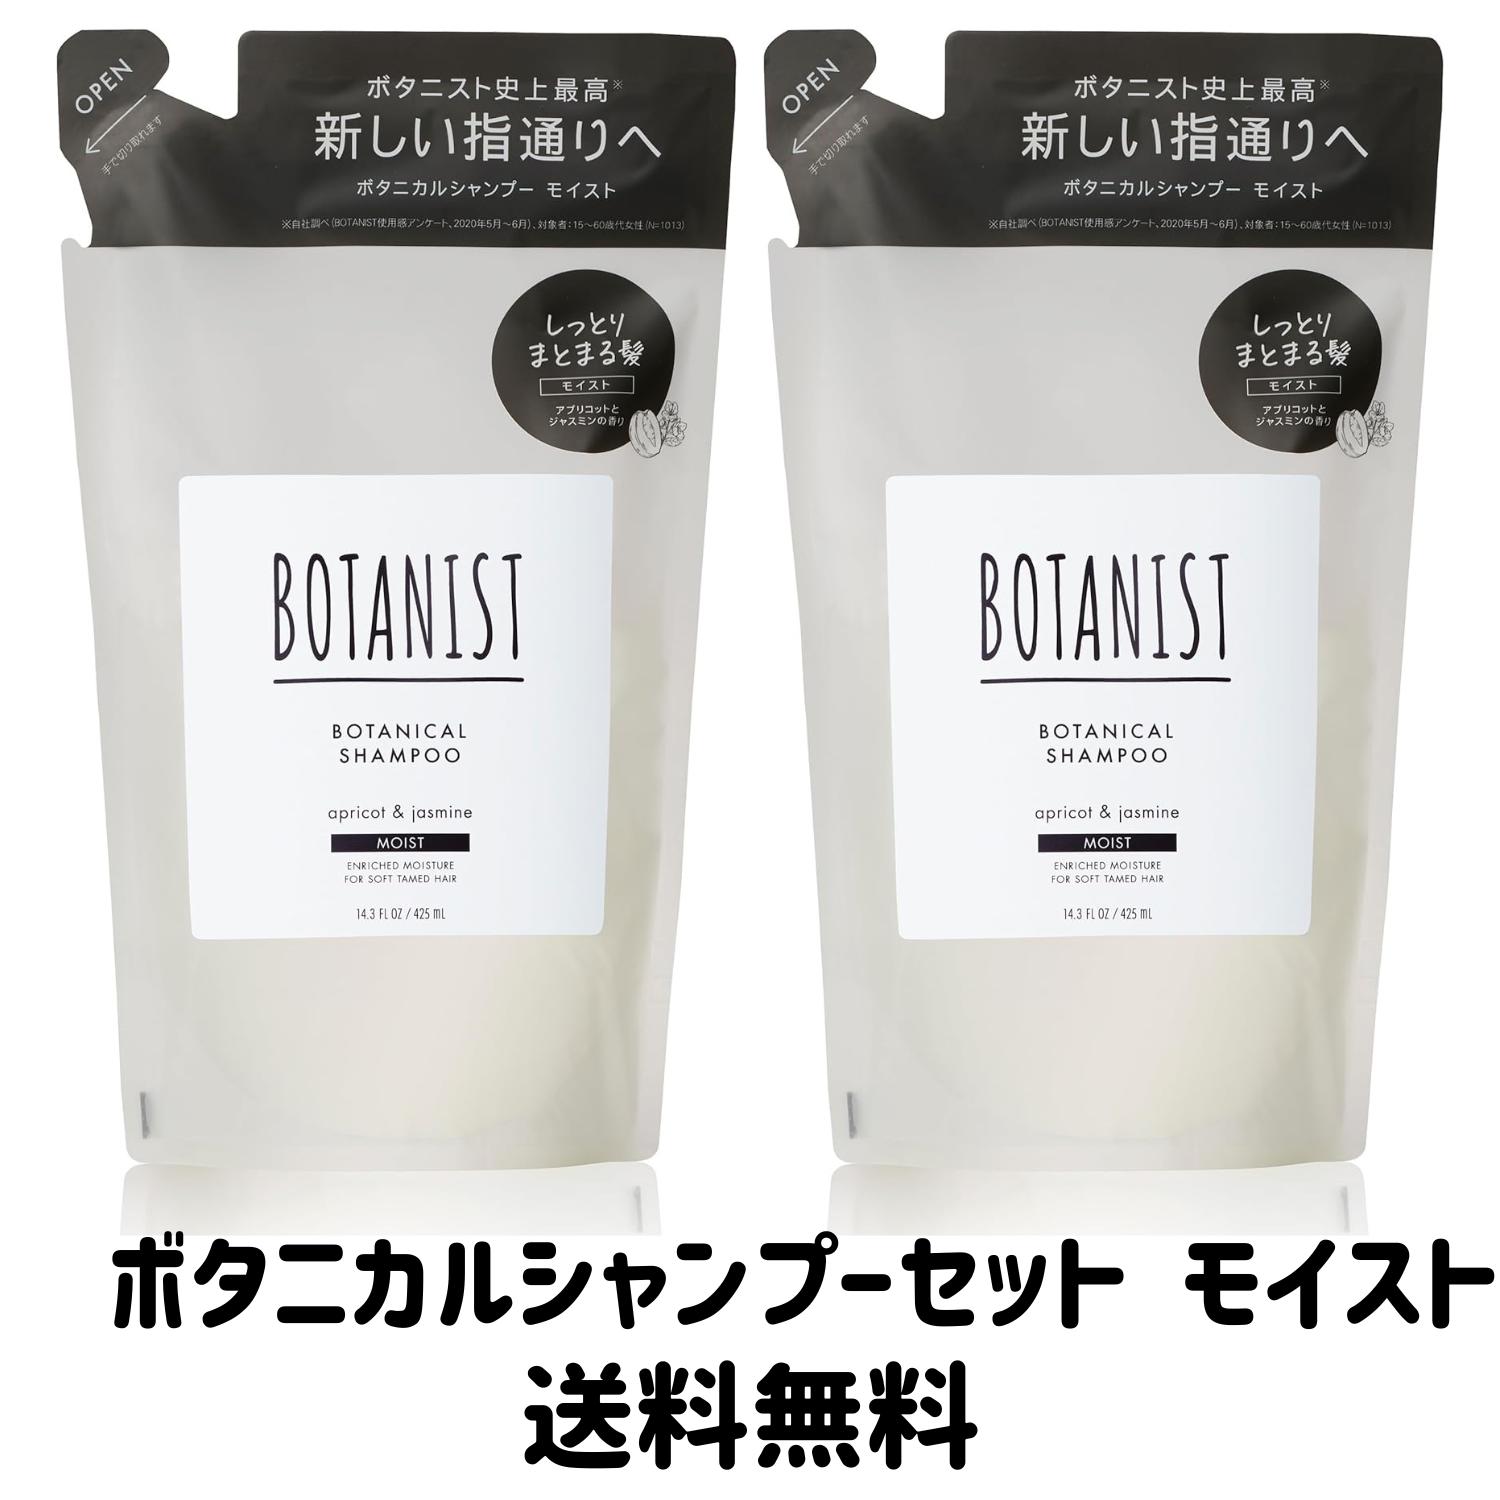 【ゲリラ特価セール】BOTANIST ボタニスト ボタニカル シャンプー モイスト しっとりまとまる髪 アプリコットとジャスミンの香り 425mL 2袋セット